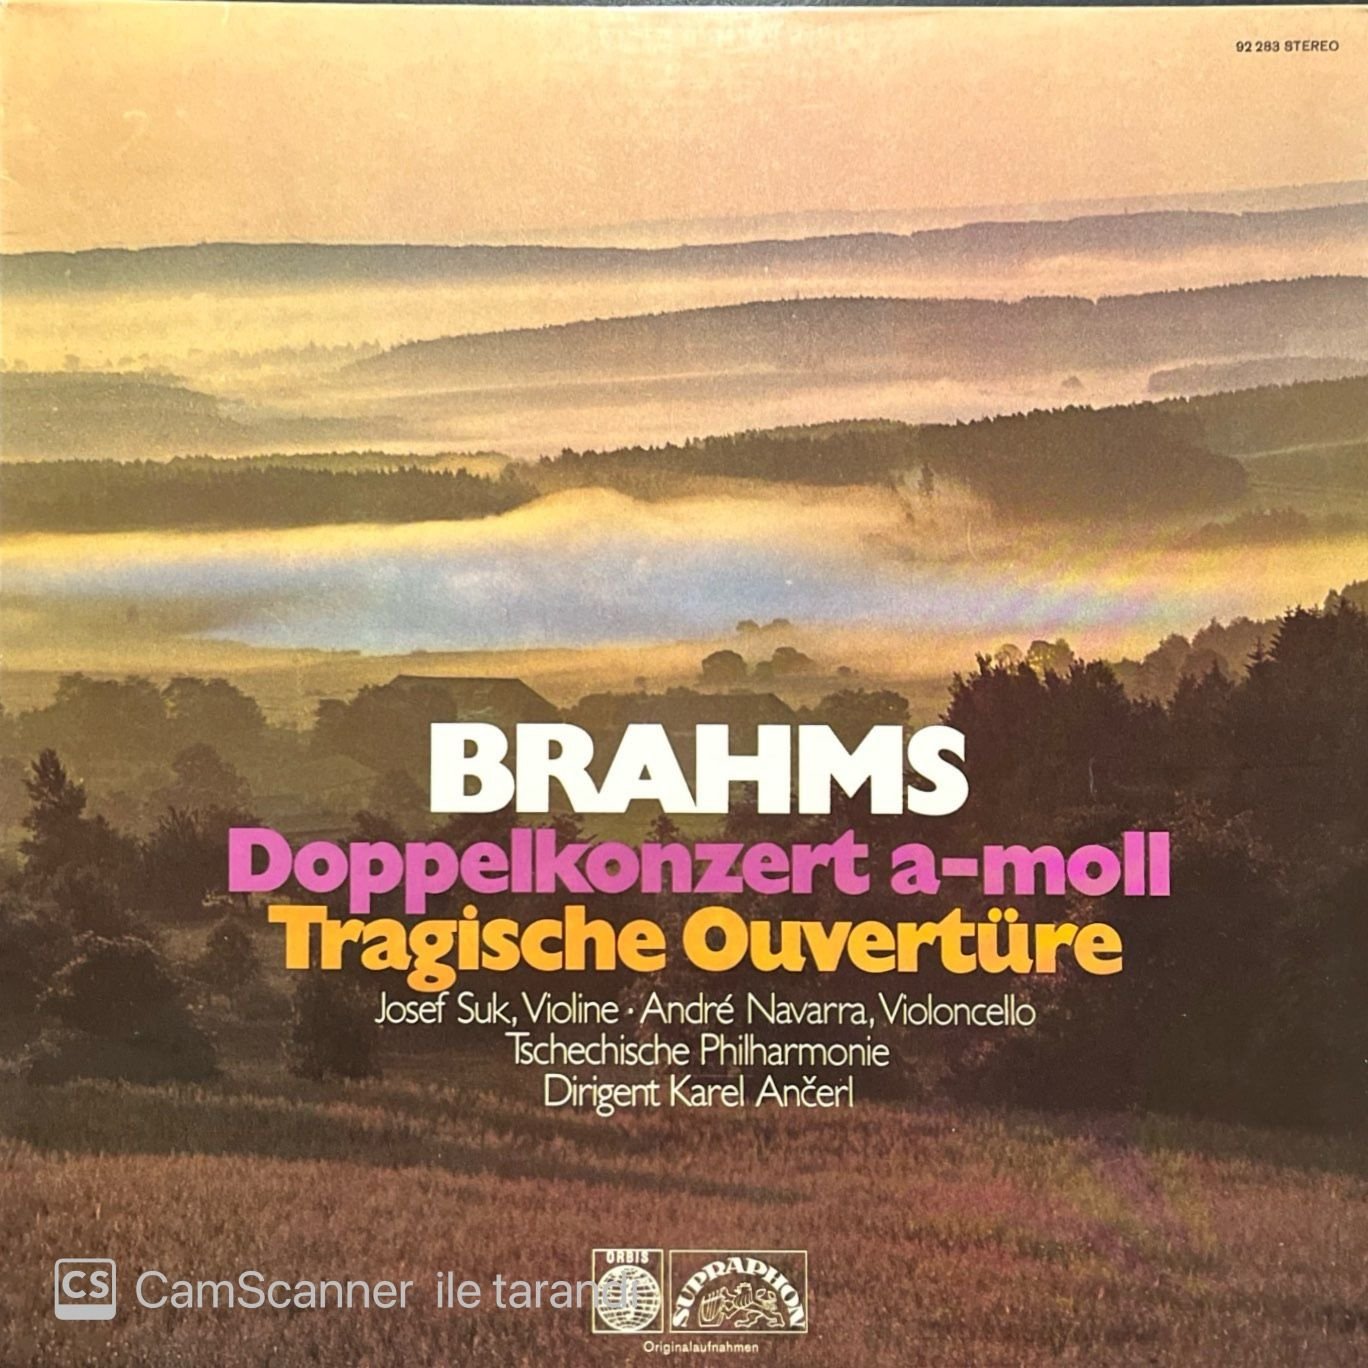 Brahms Doppelkonzert A-Moll Tragische Ouvertüre LP Plak